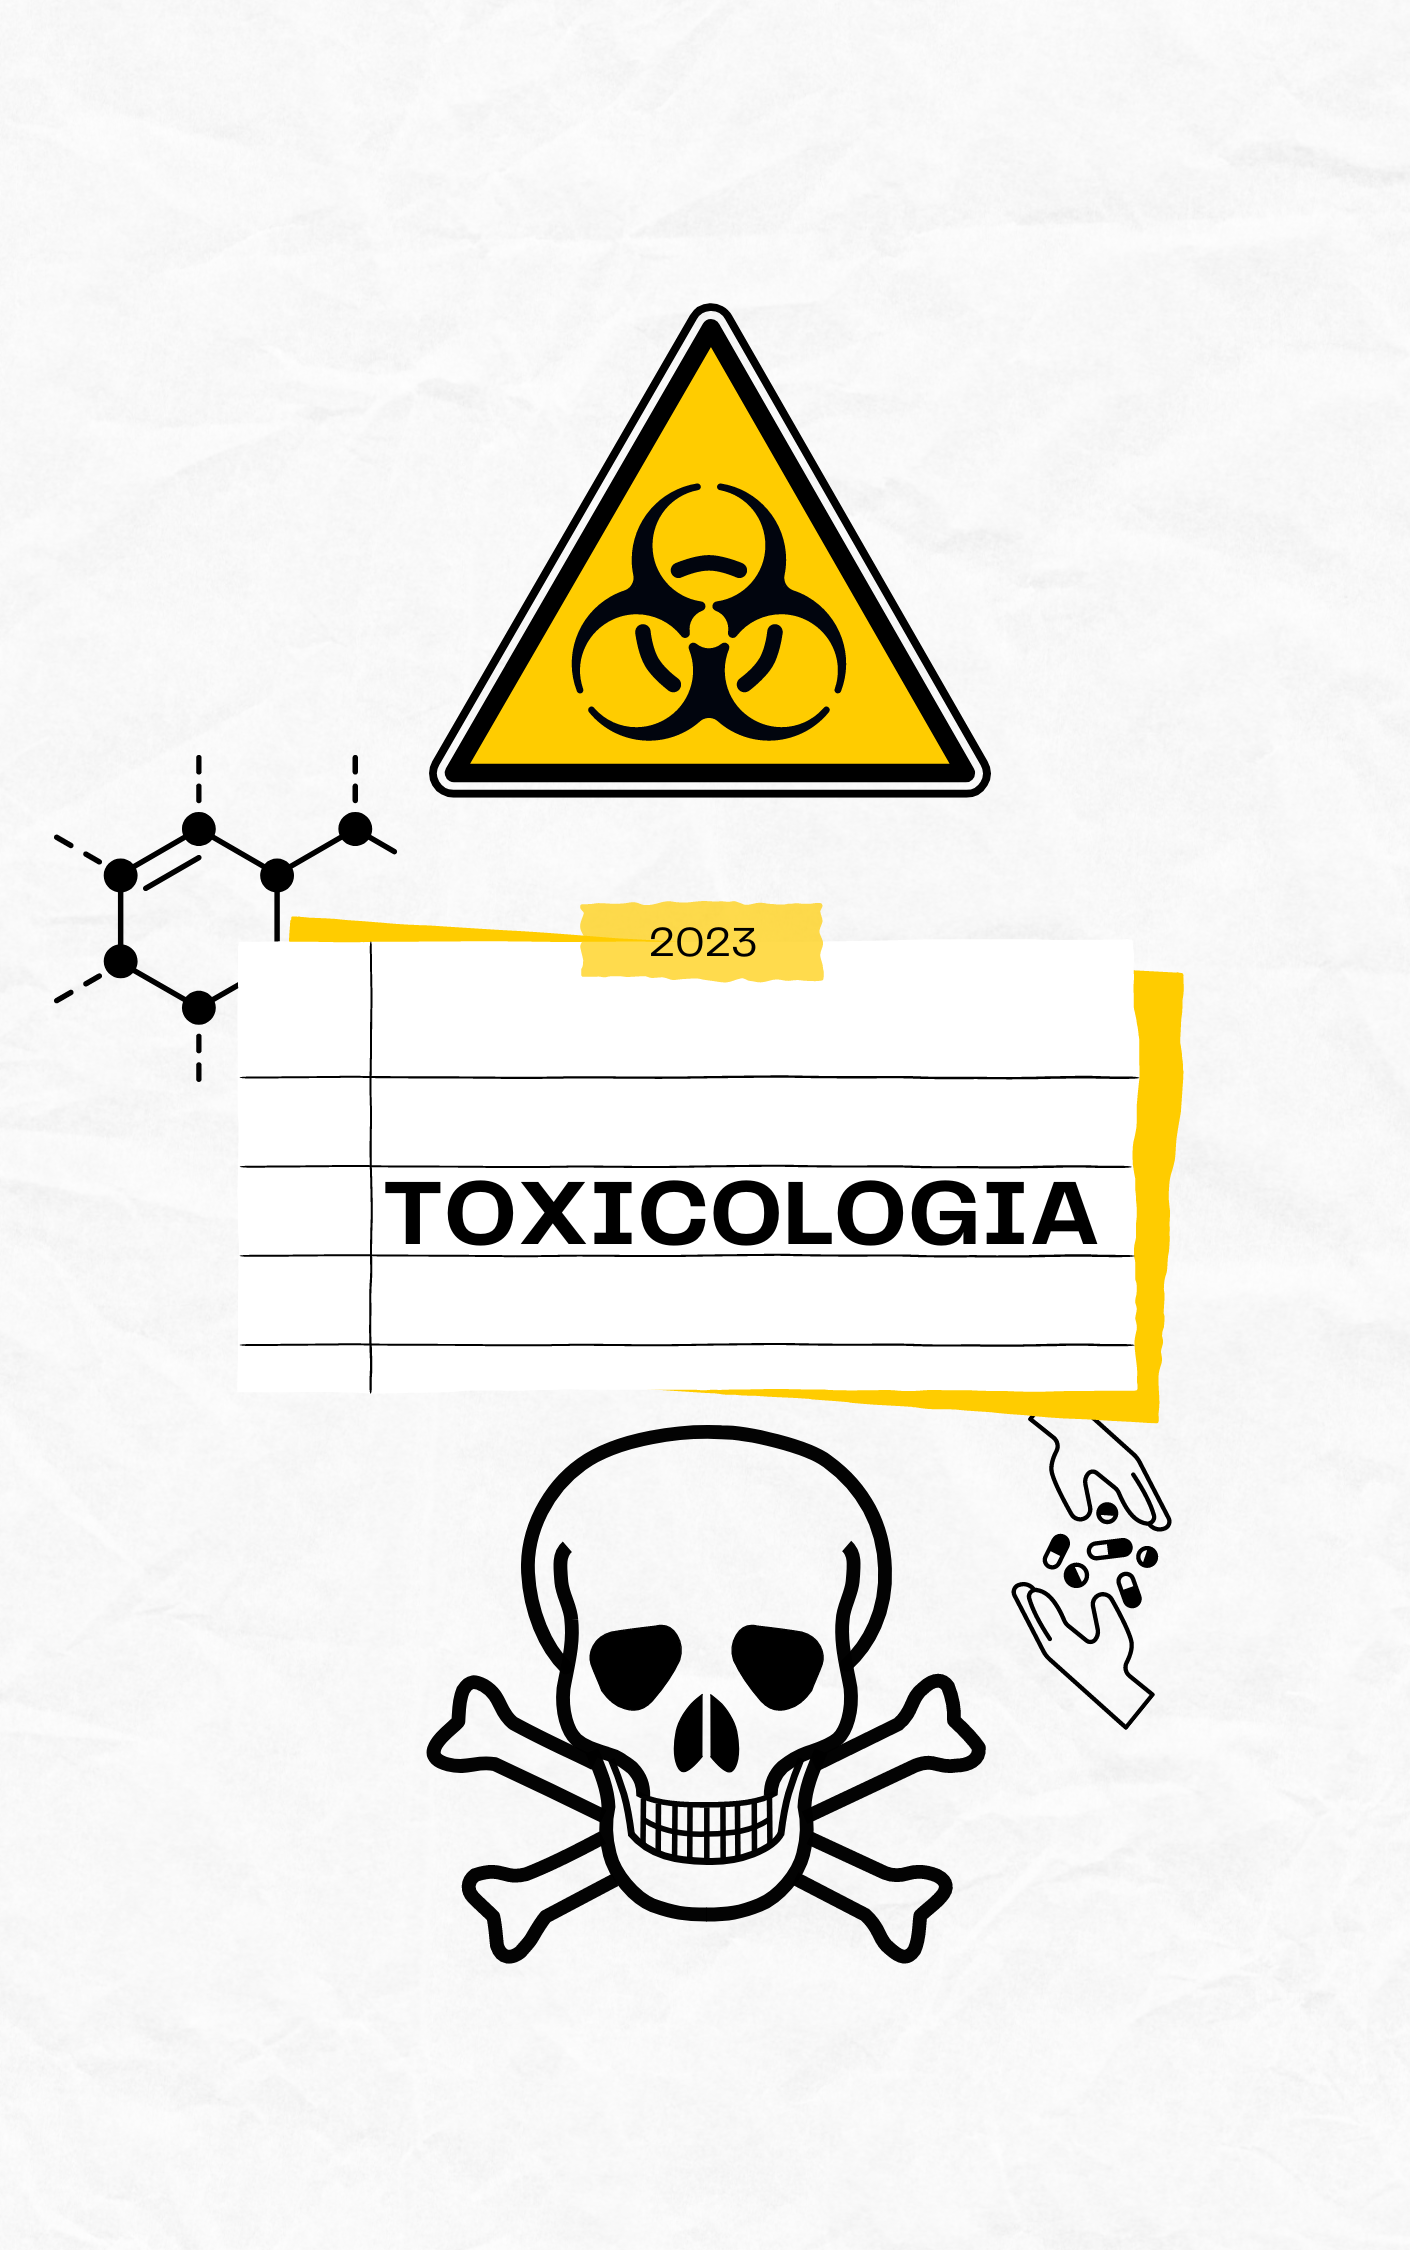 Toxicologia